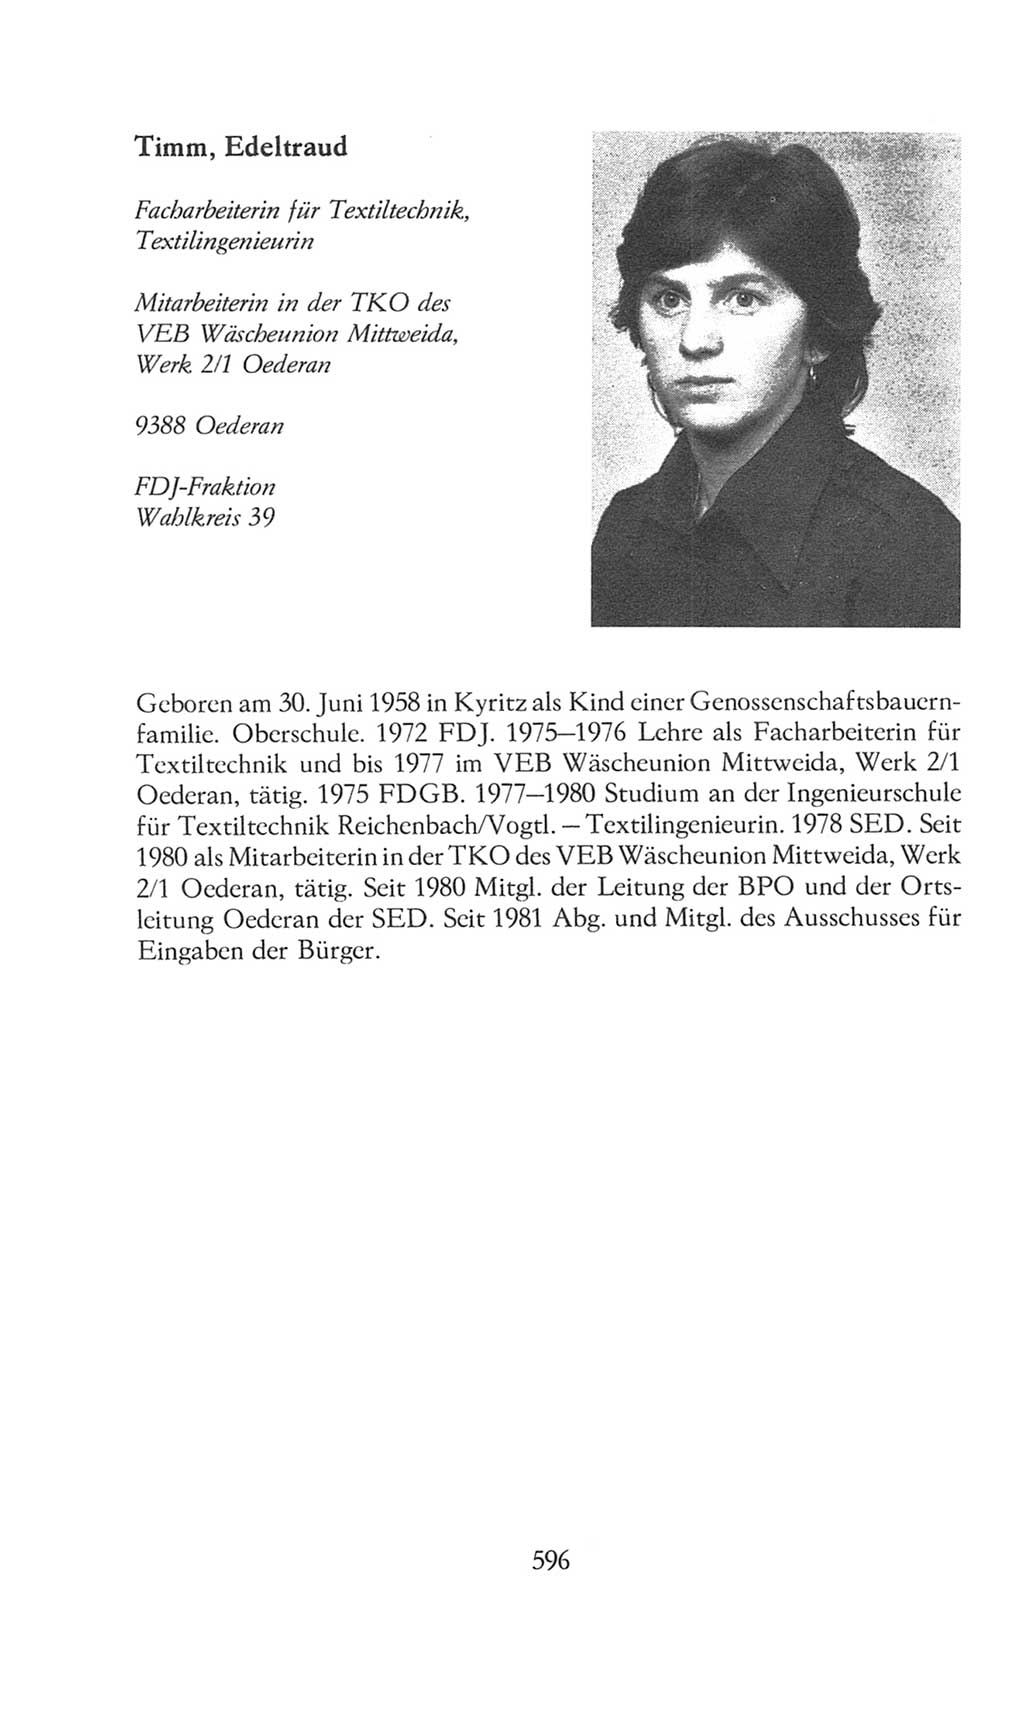 Volkskammer (VK) der Deutschen Demokratischen Republik (DDR), 8. Wahlperiode 1981-1986, Seite 596 (VK. DDR 8. WP. 1981-1986, S. 596)